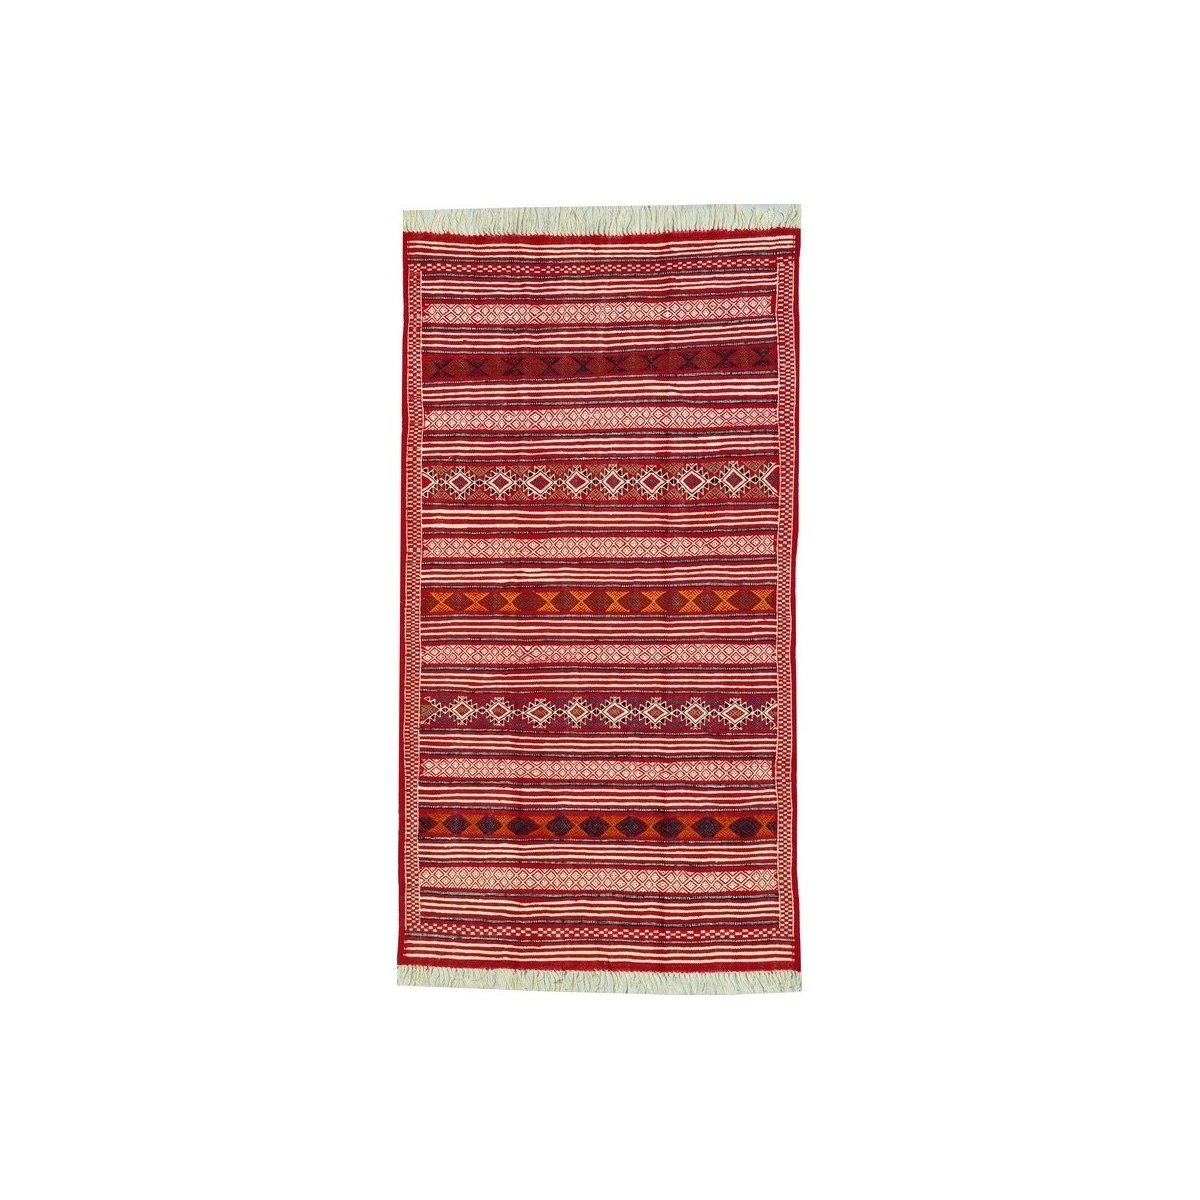 Berber Teppich Großer Teppich Kelim Mahres 110x200 Rot (Handgewebt, Wolle, Tunesien) Tunesischer Kelim-Teppich im marokkanischen